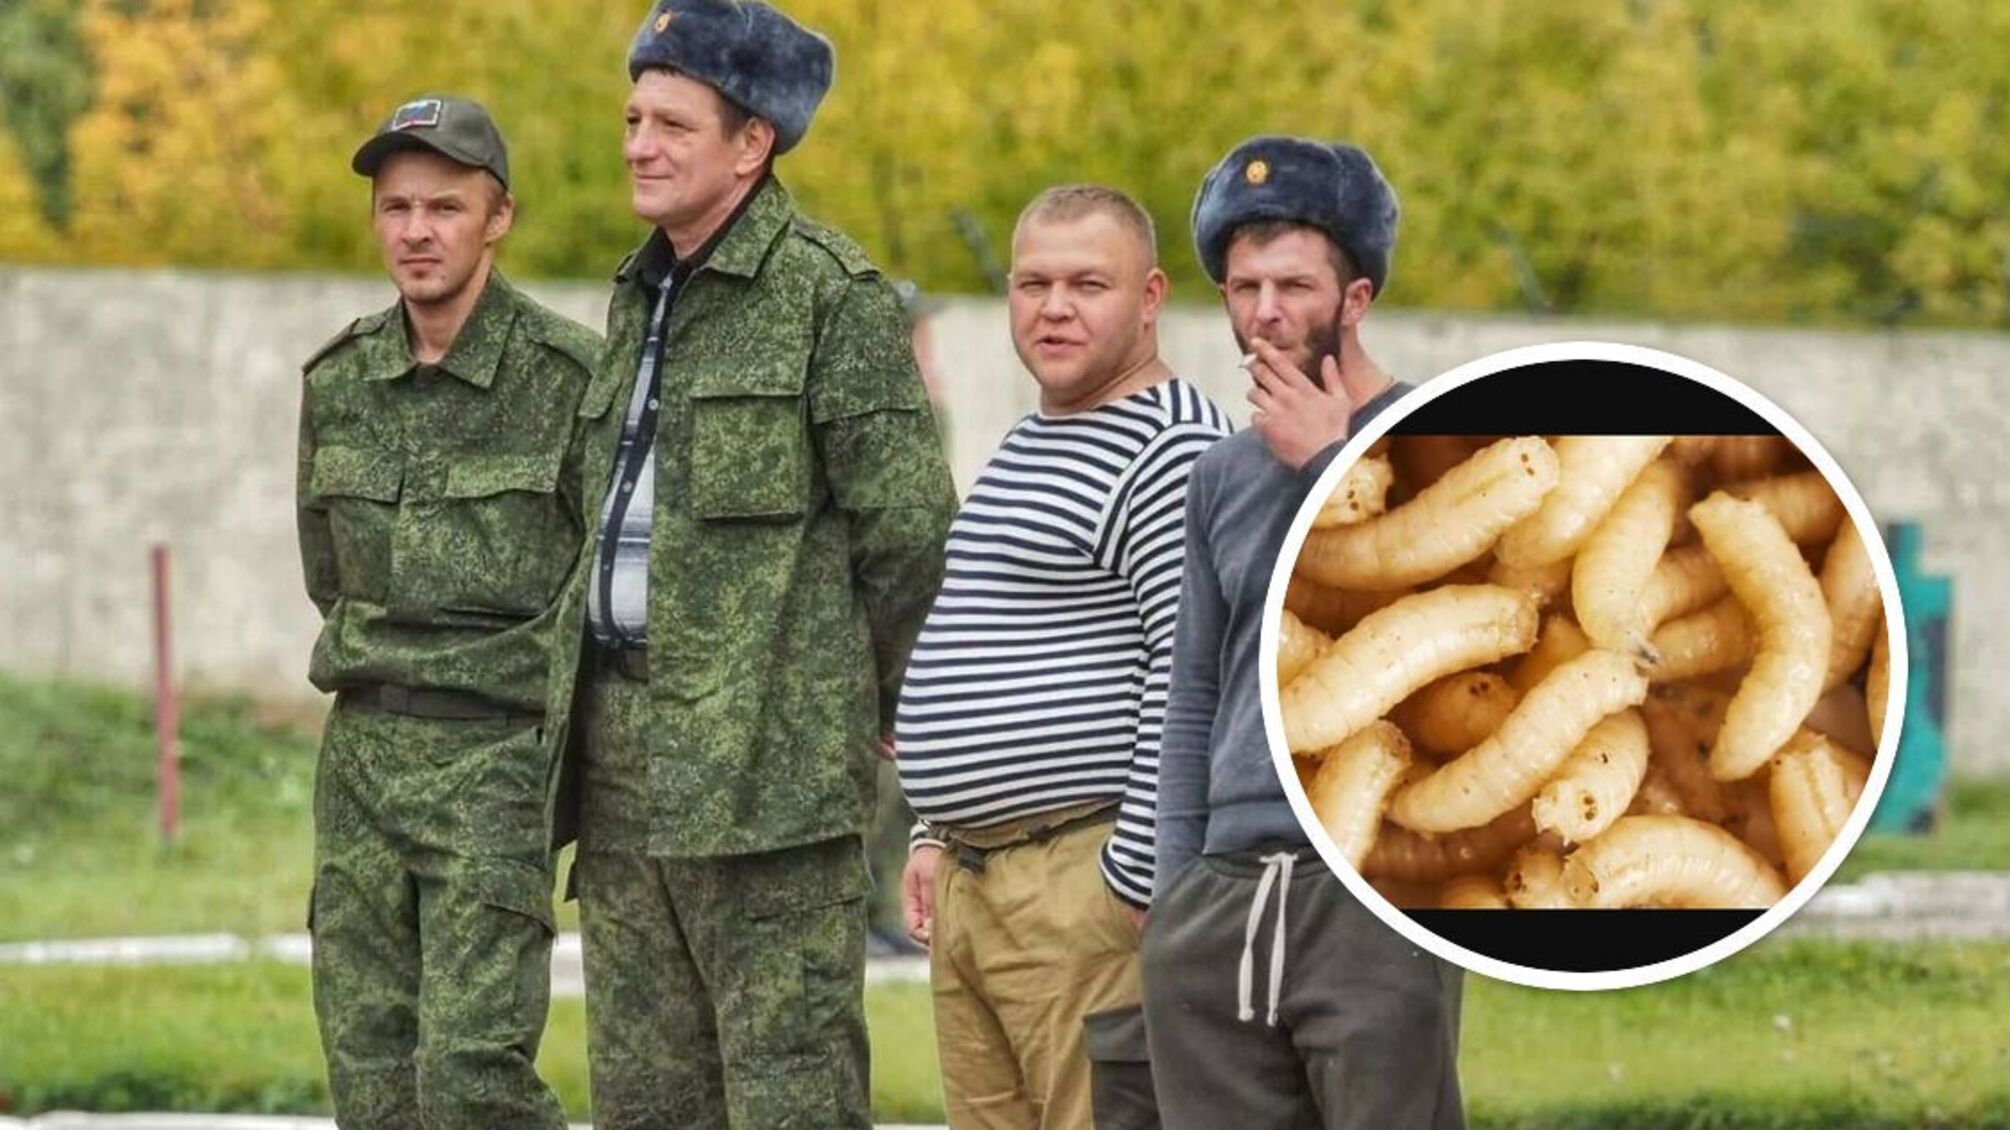 С опарышами: русские военные пожаловались на тушенку с червями (видео)